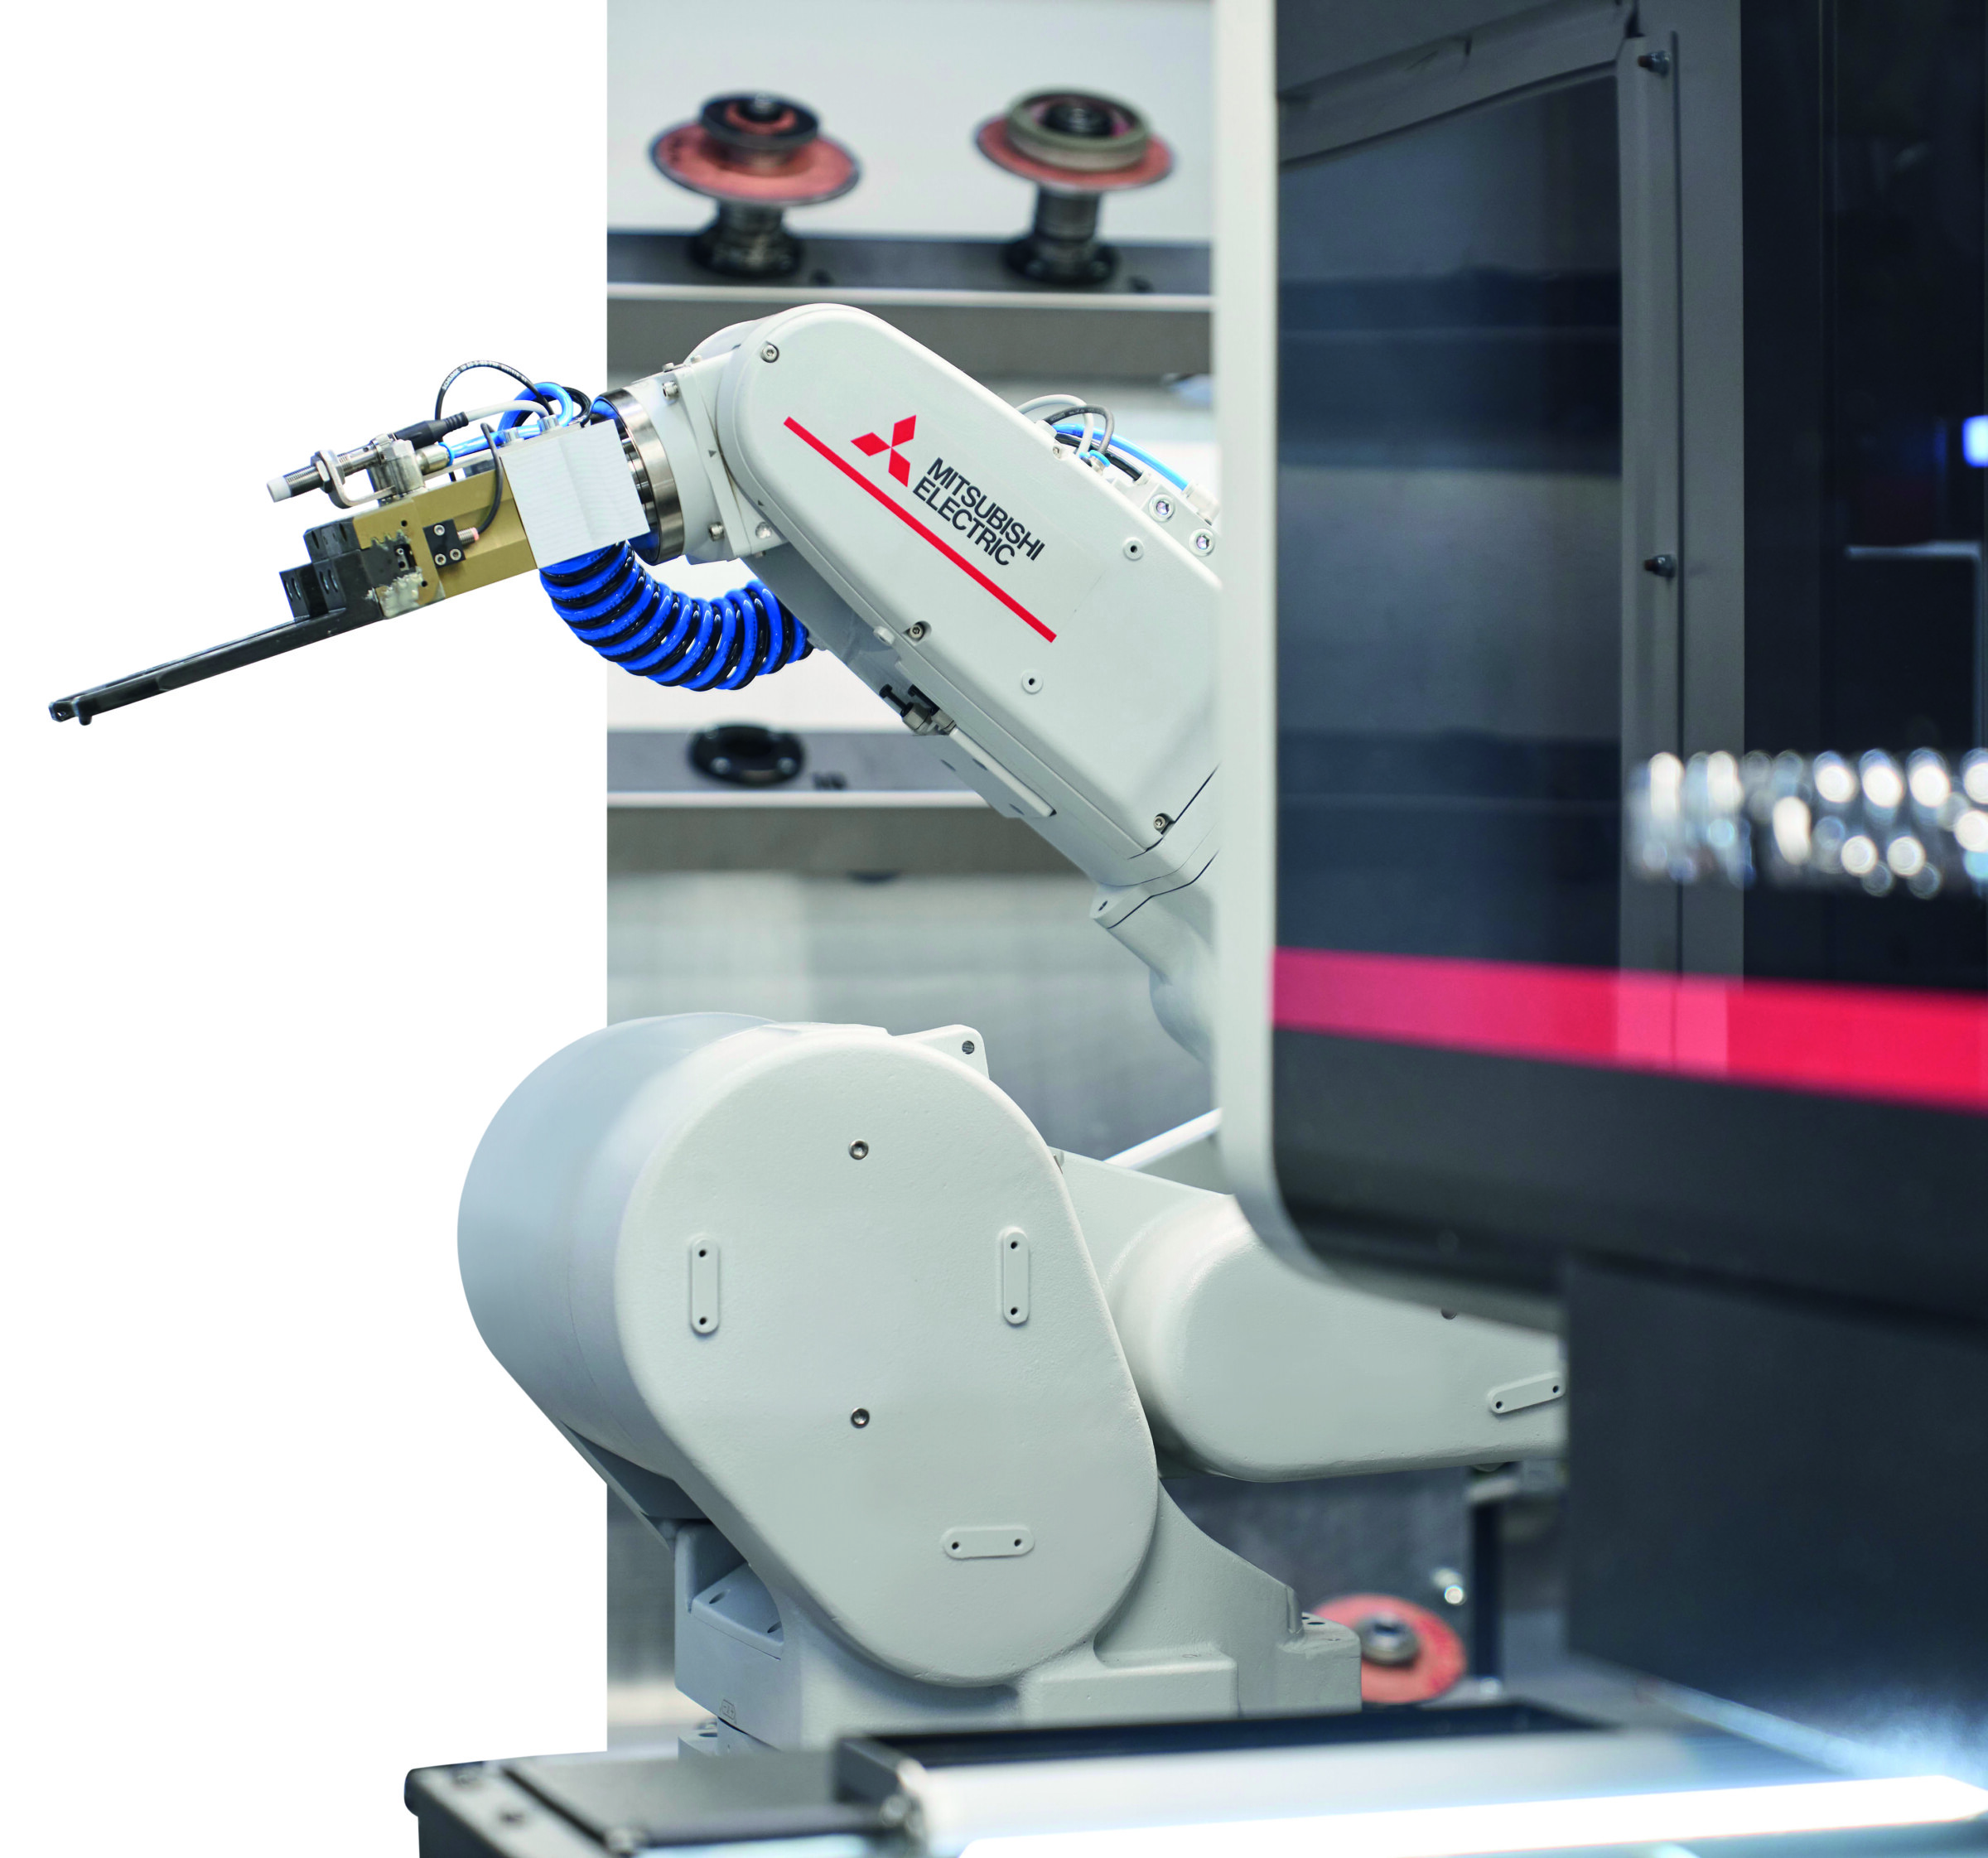 Der Roboter be- und entlädt in der Automationszelle die Drahterodiermaschine.